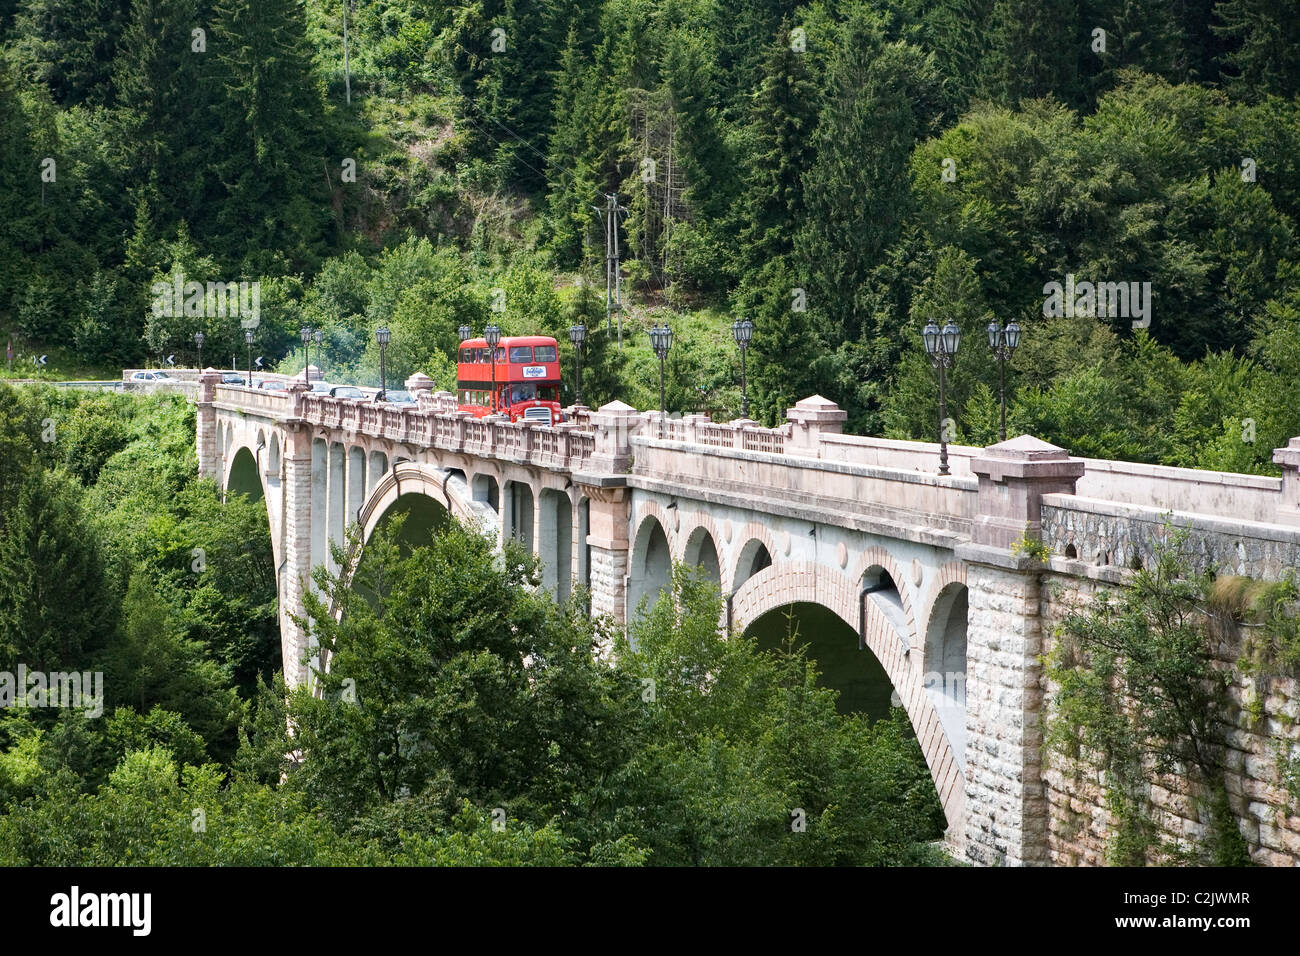 London red Bus überqueren einer Brücke in den grünen Wald in Italy.Transport für London Routemaster dient zur Hochzeit Gues transportieren Stockfoto